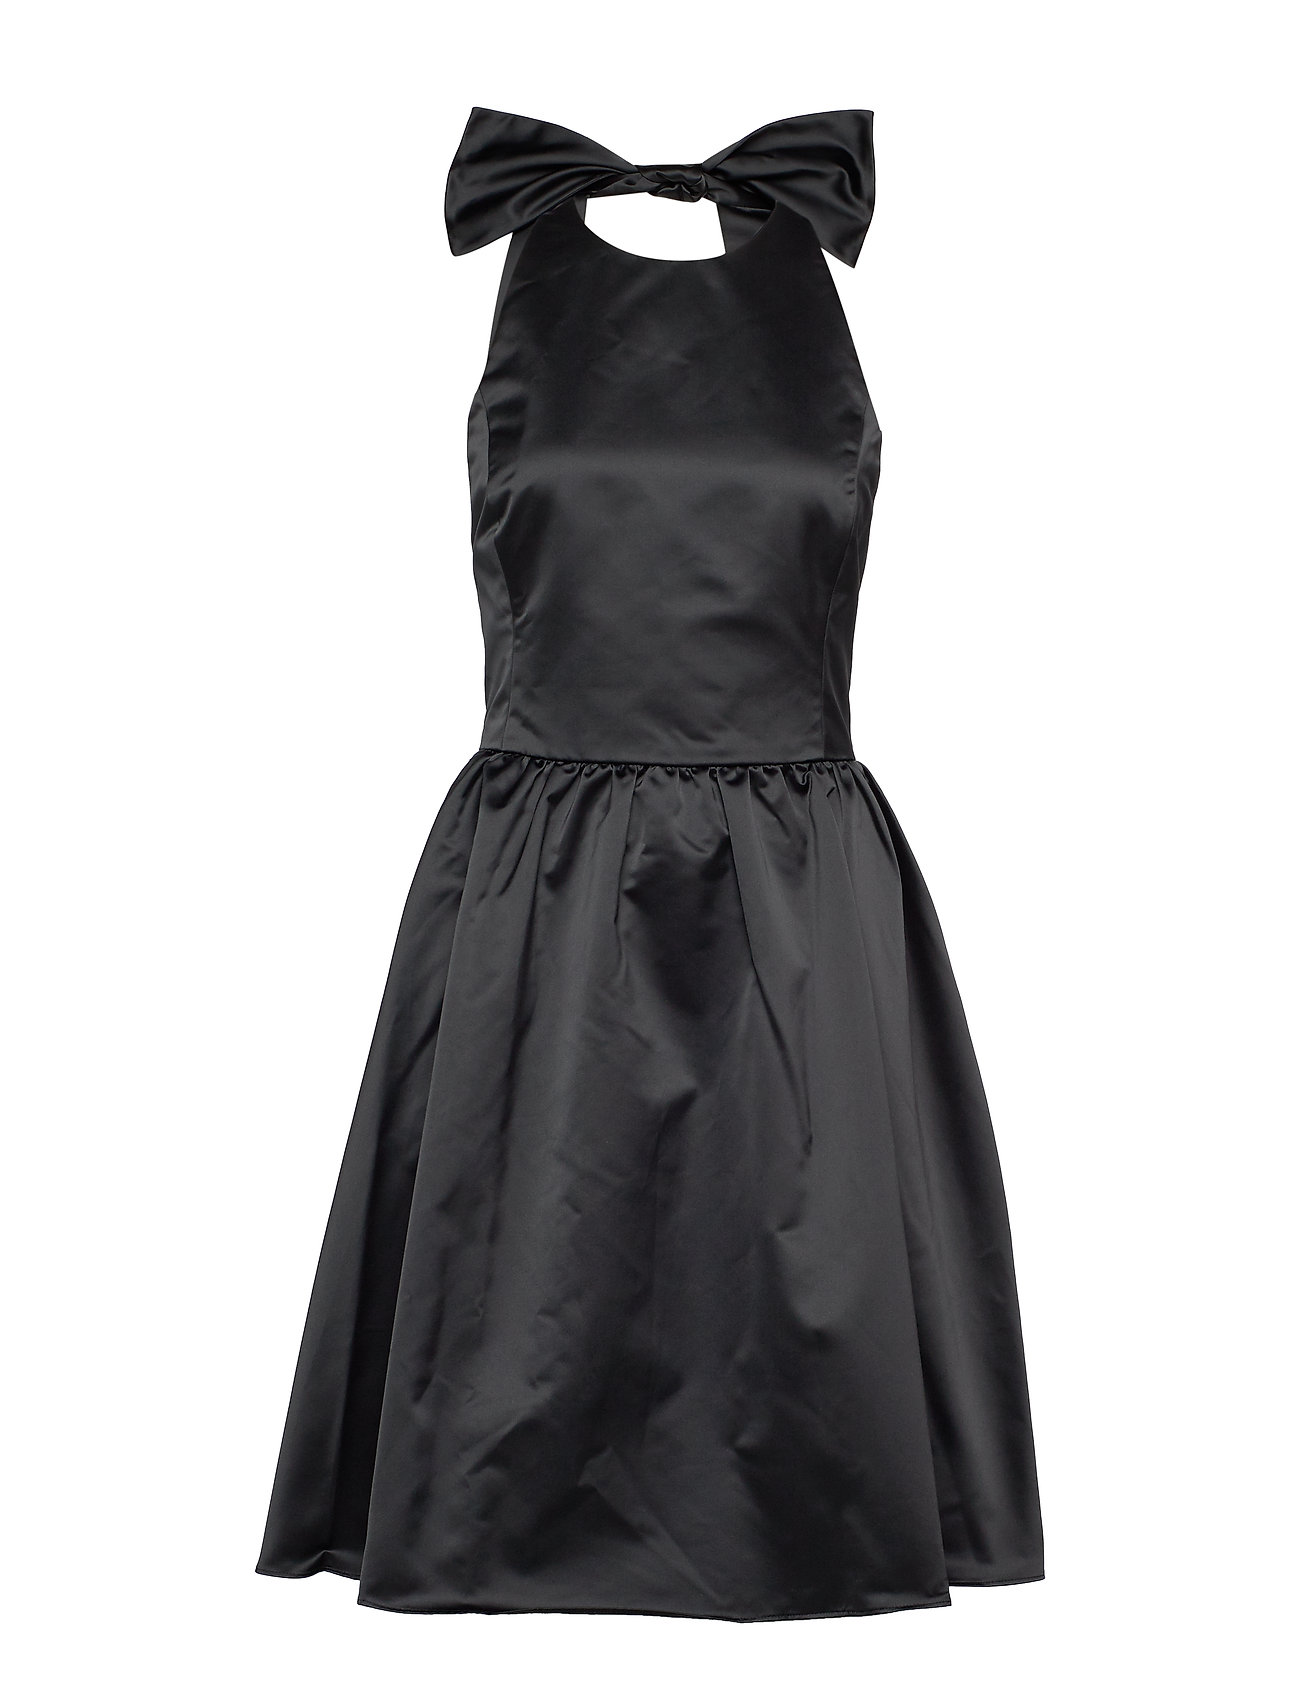 polo ralph lauren black dress